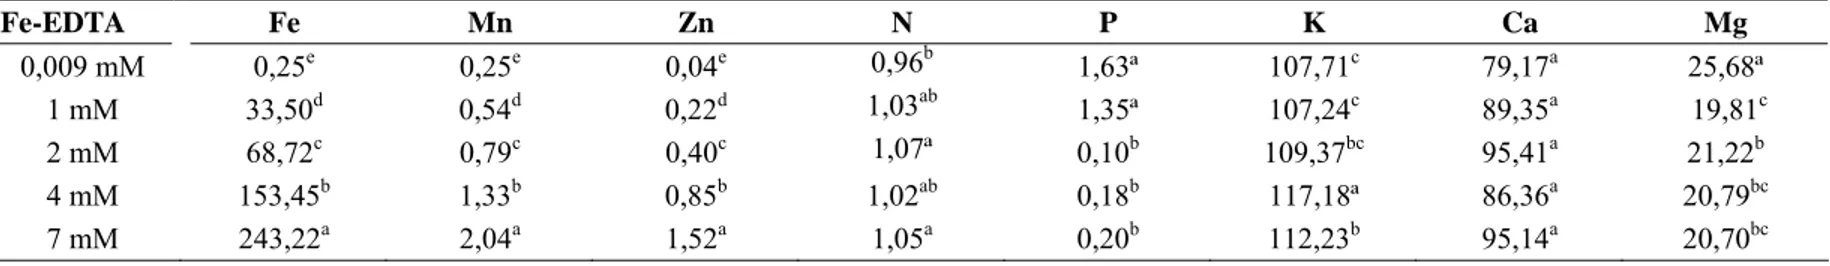 Tabela 1: Concentrações de nutrientes (mg L -1 ) presentes na solução nutritiva recém preparada nas diferentes concentrações  de Fe-EDTA